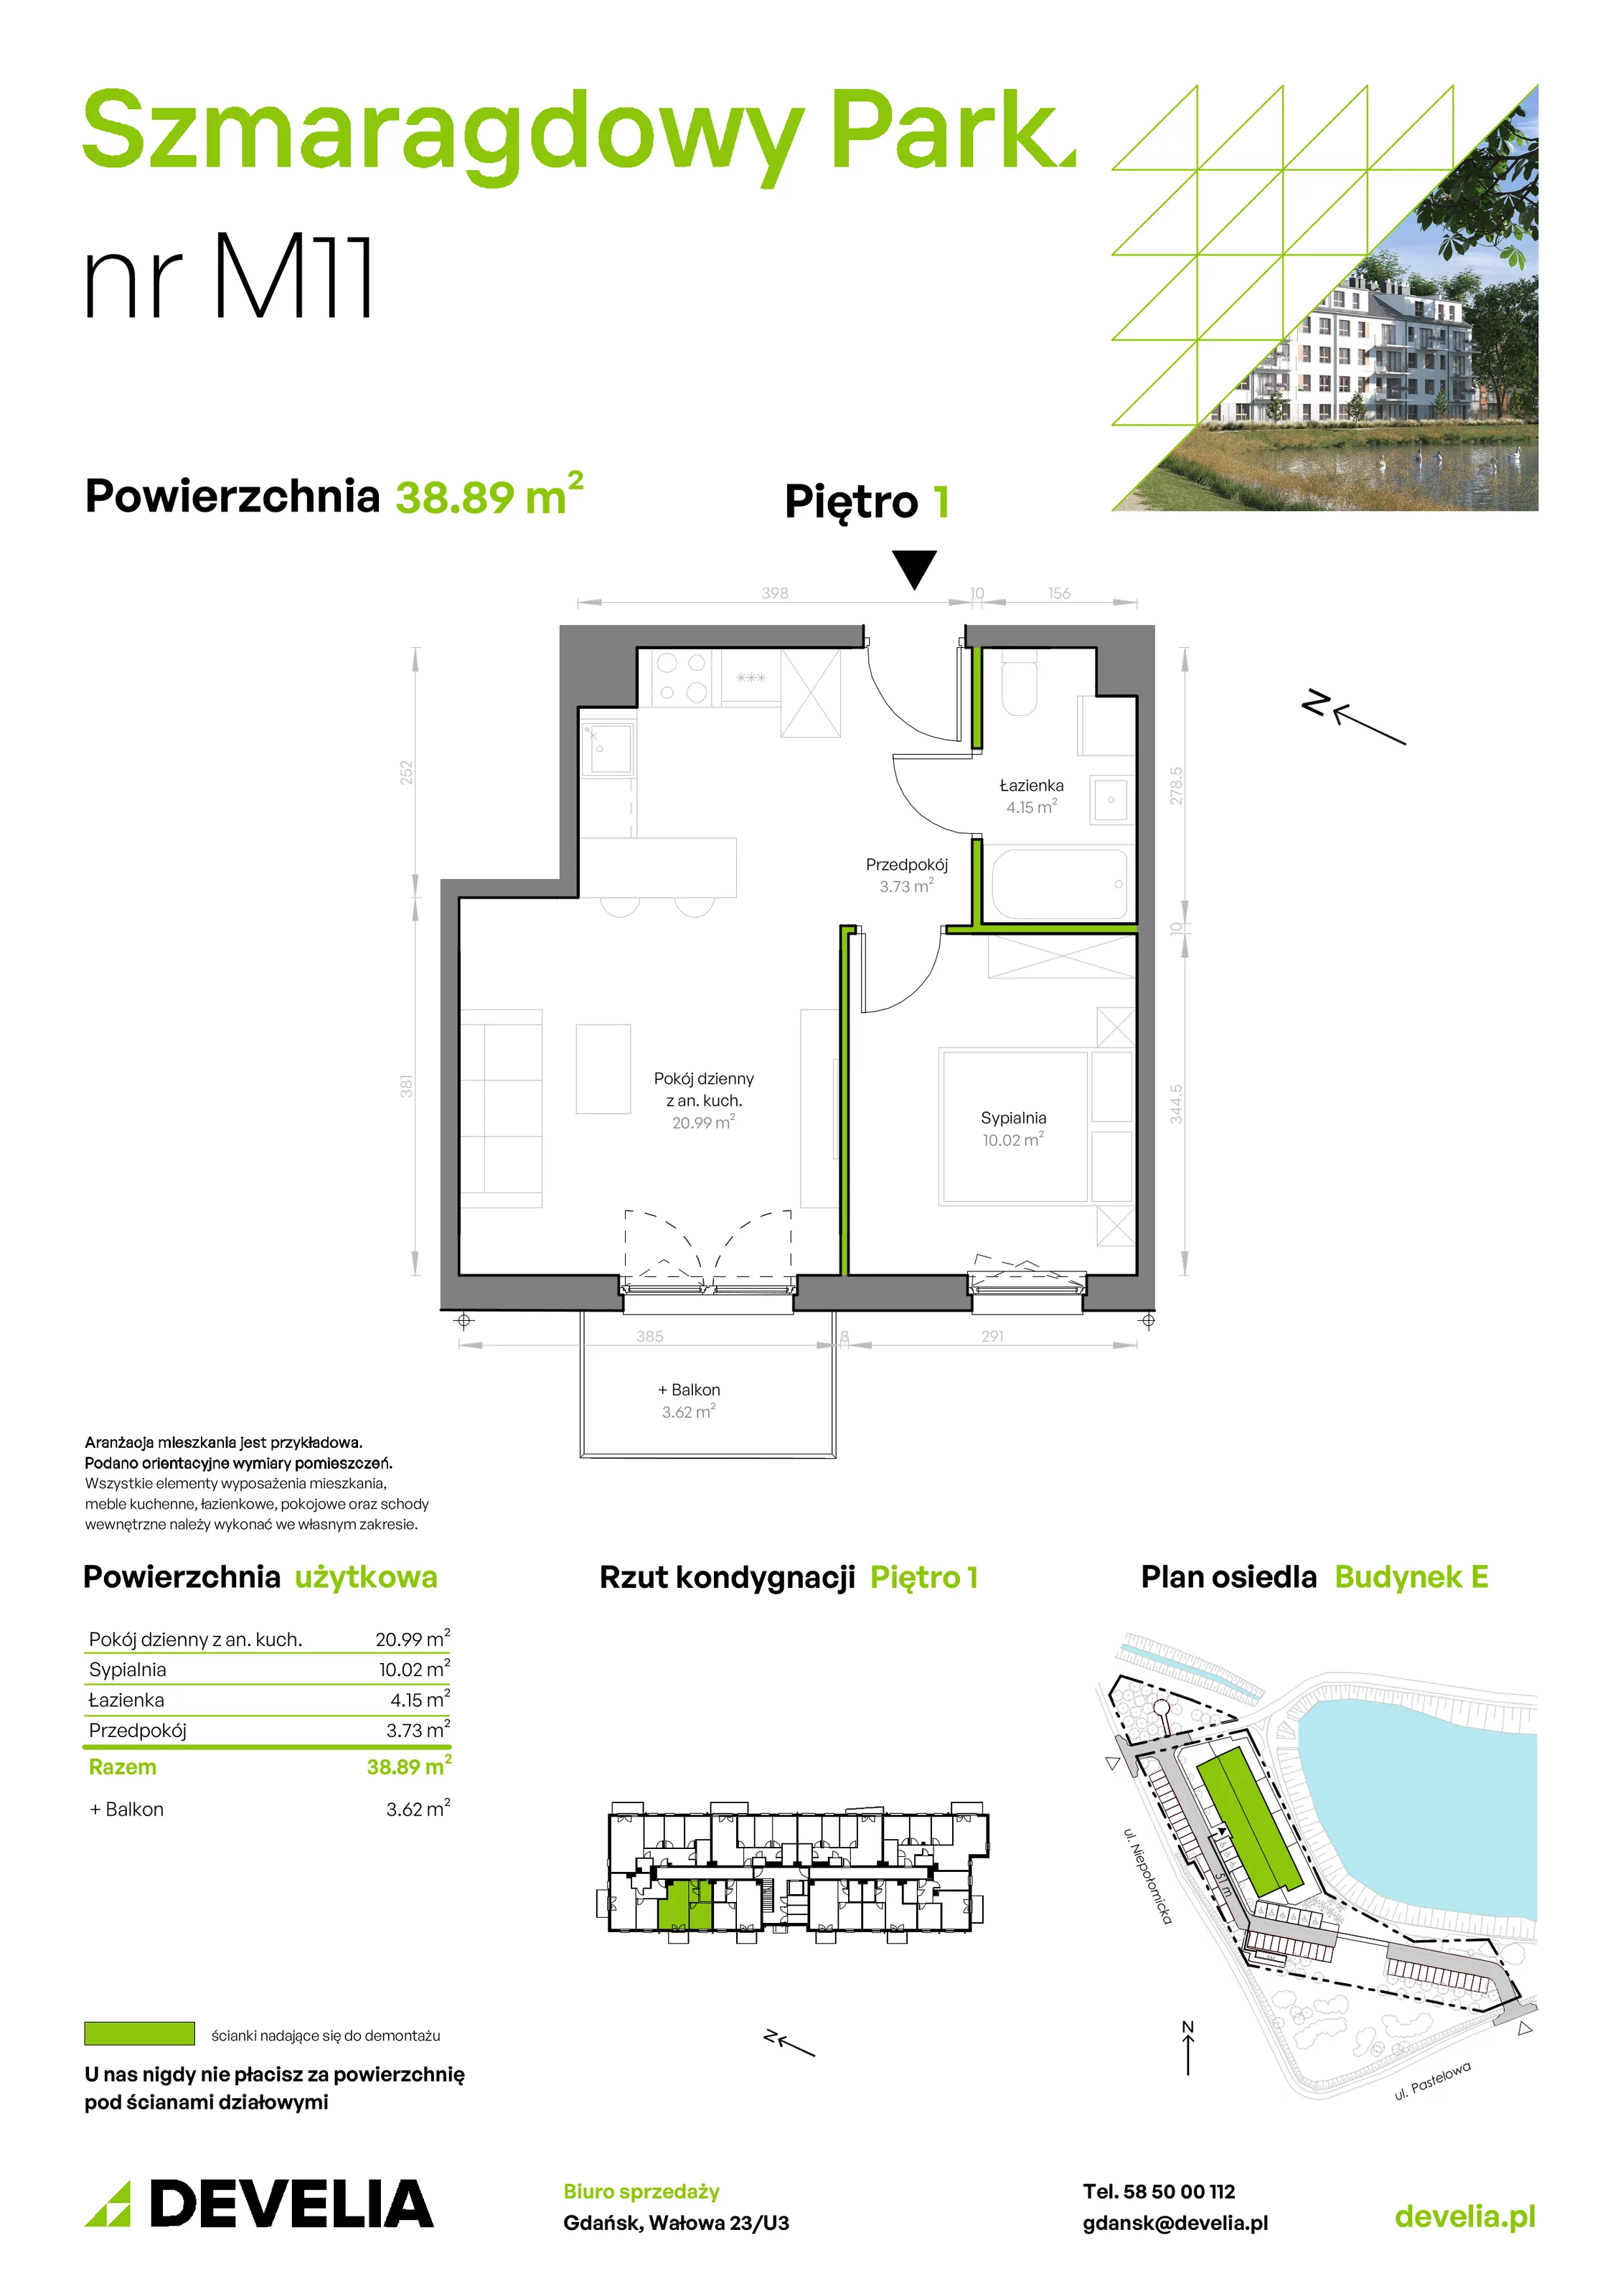 Mieszkanie 38,89 m², piętro 1, oferta nr E/011, Szmaragdowy Park, Gdańsk, Orunia Górna-Gdańsk Południe, Łostowice, ul. Topazowa 2